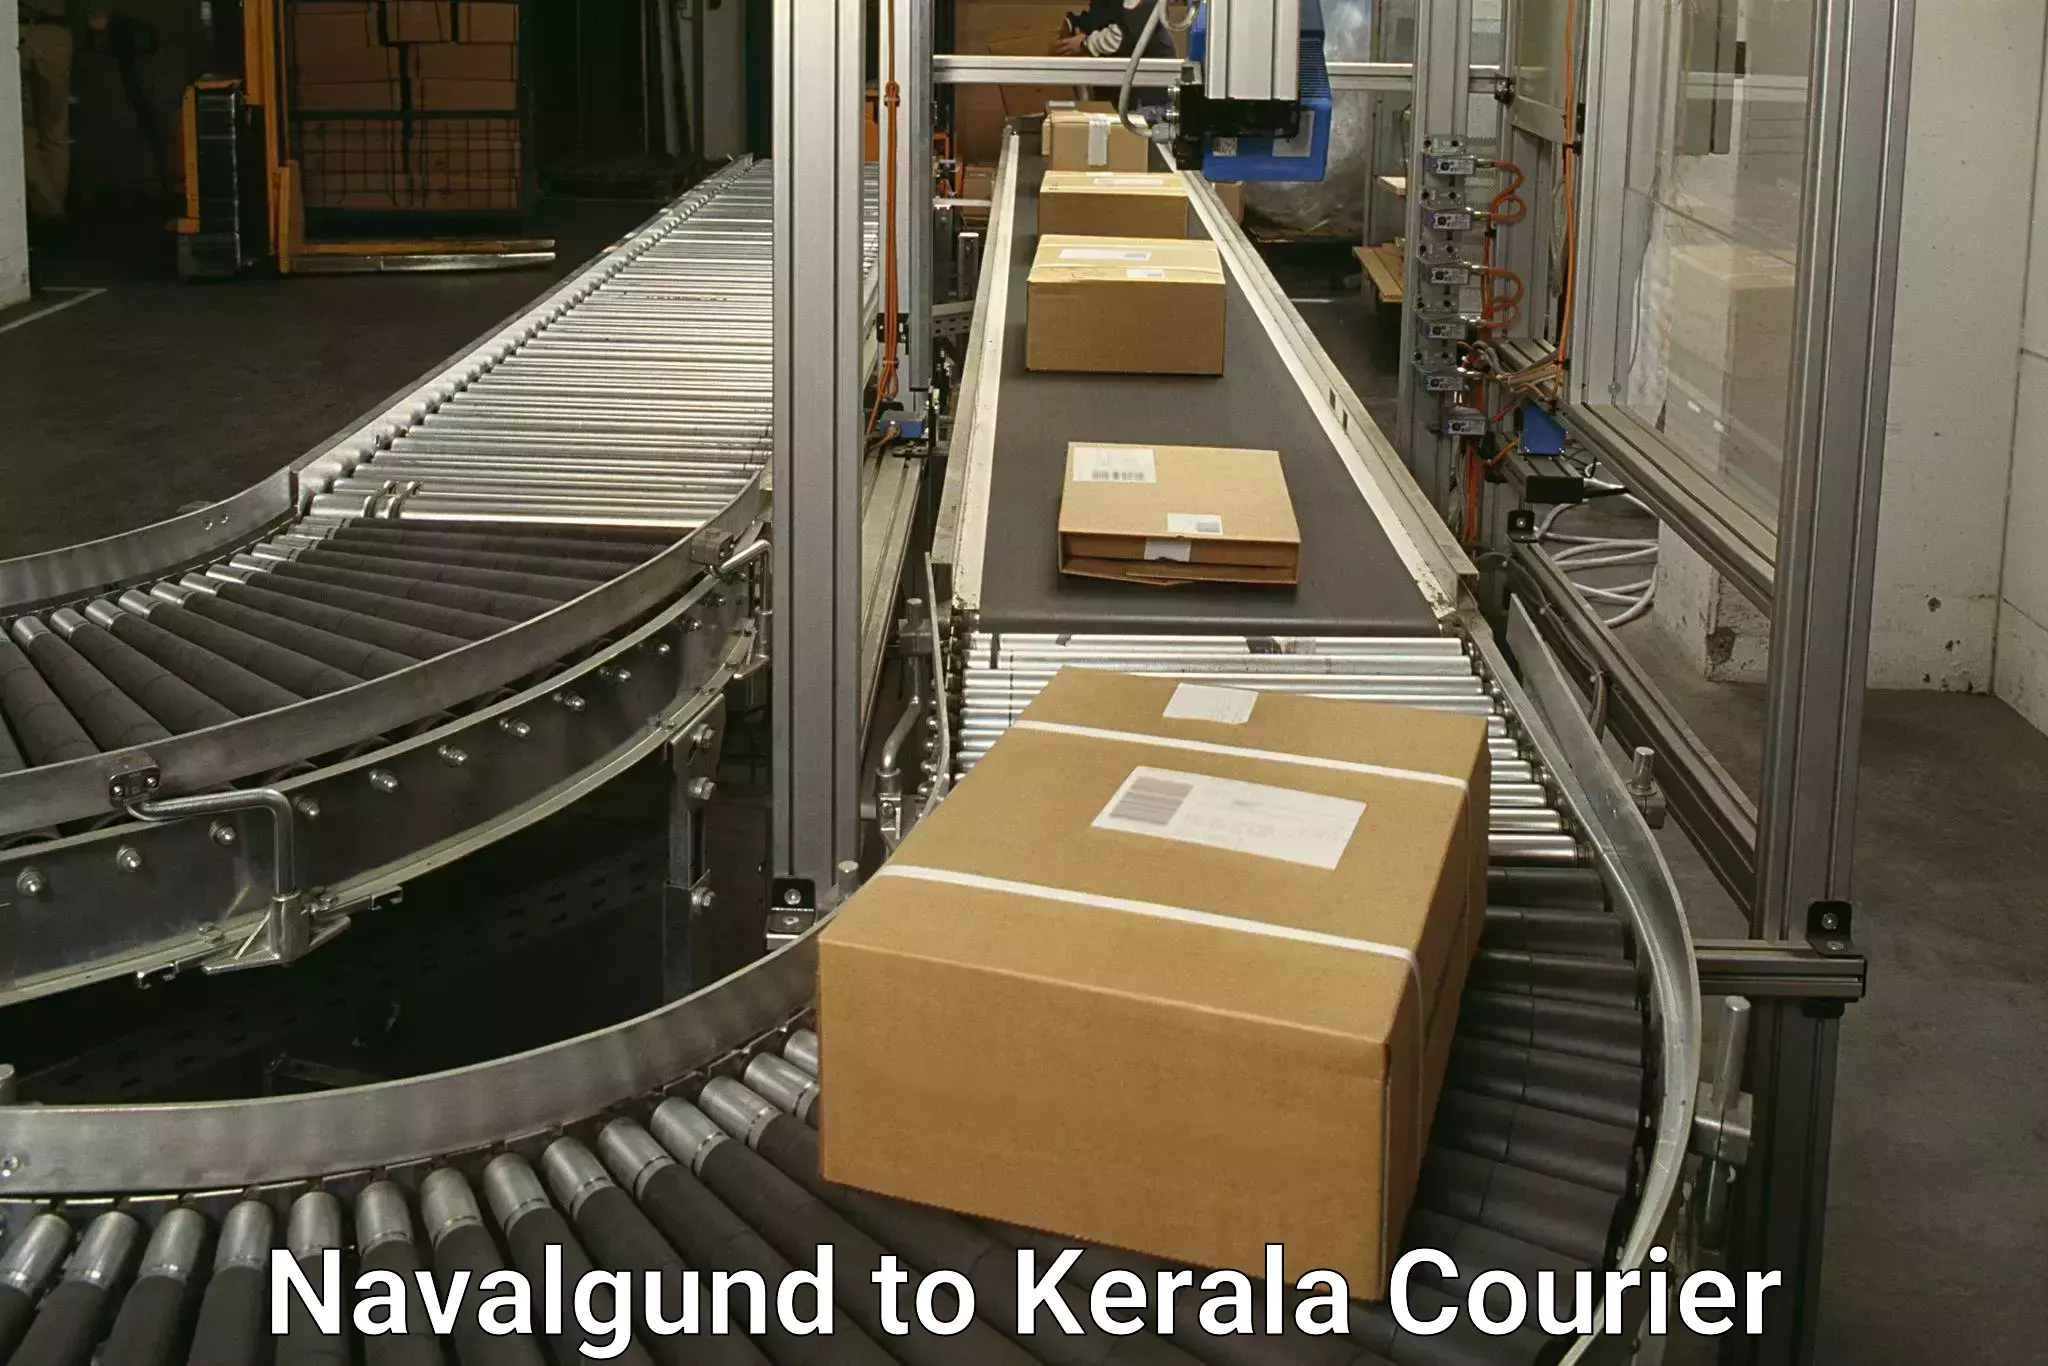 Cash on delivery service Navalgund to Neyyattinkara